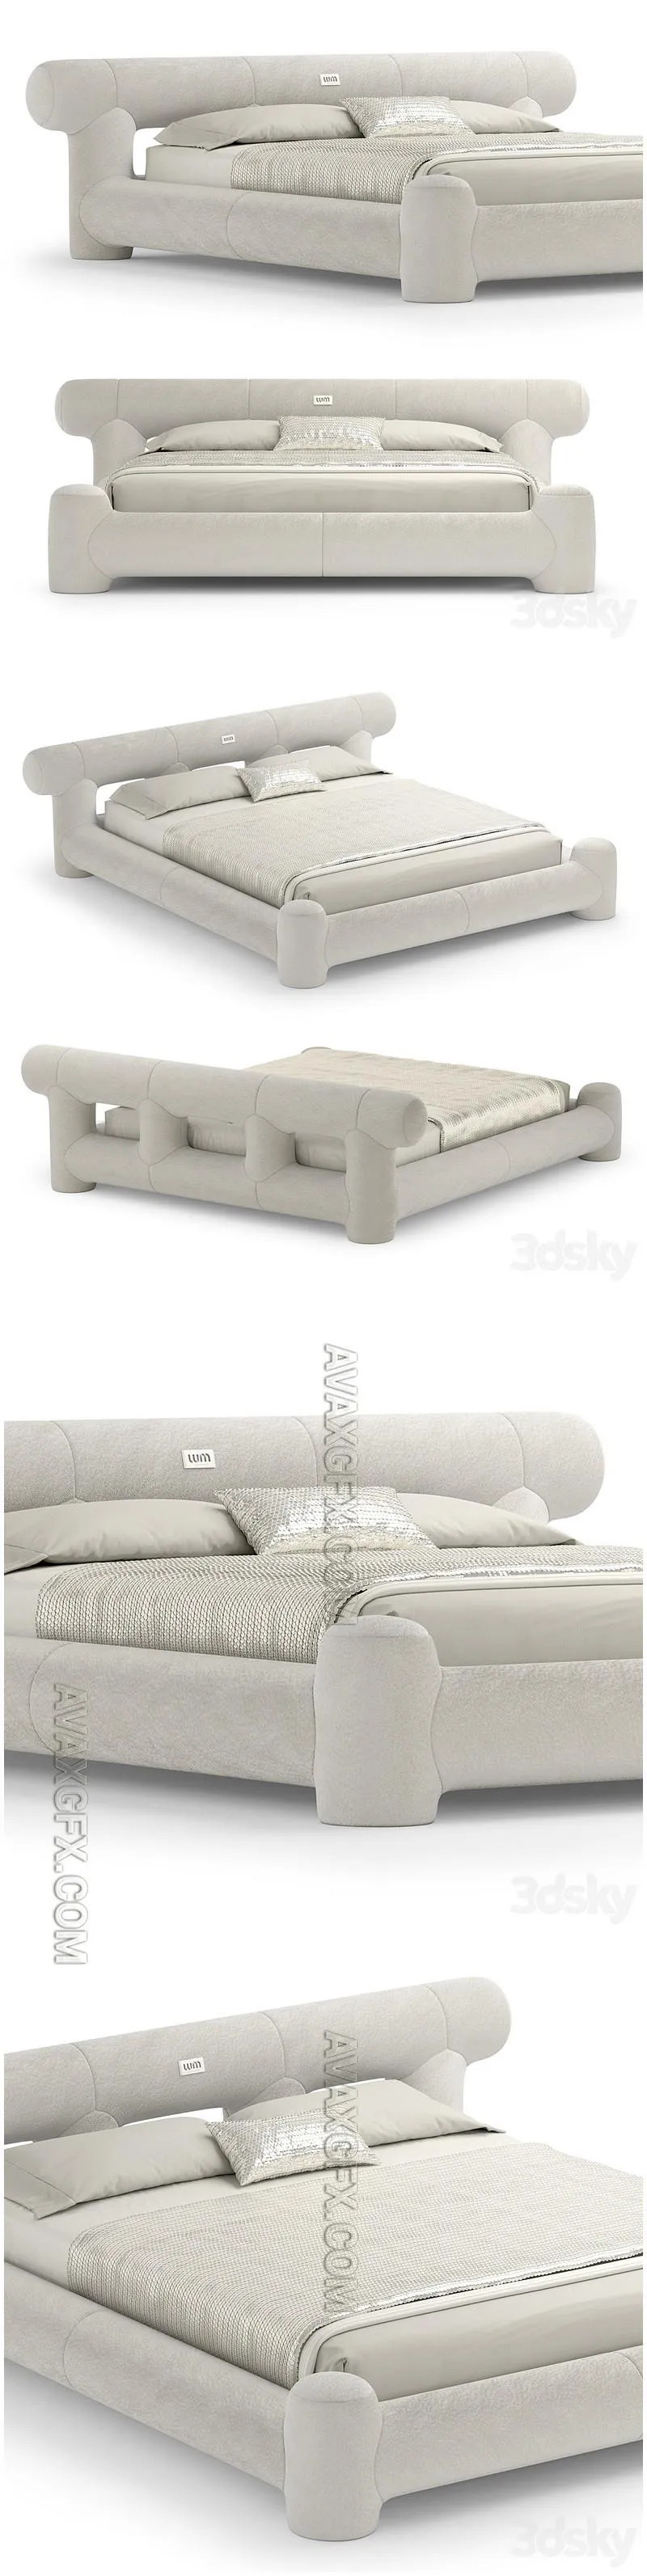 Maya Bed - 3D Model